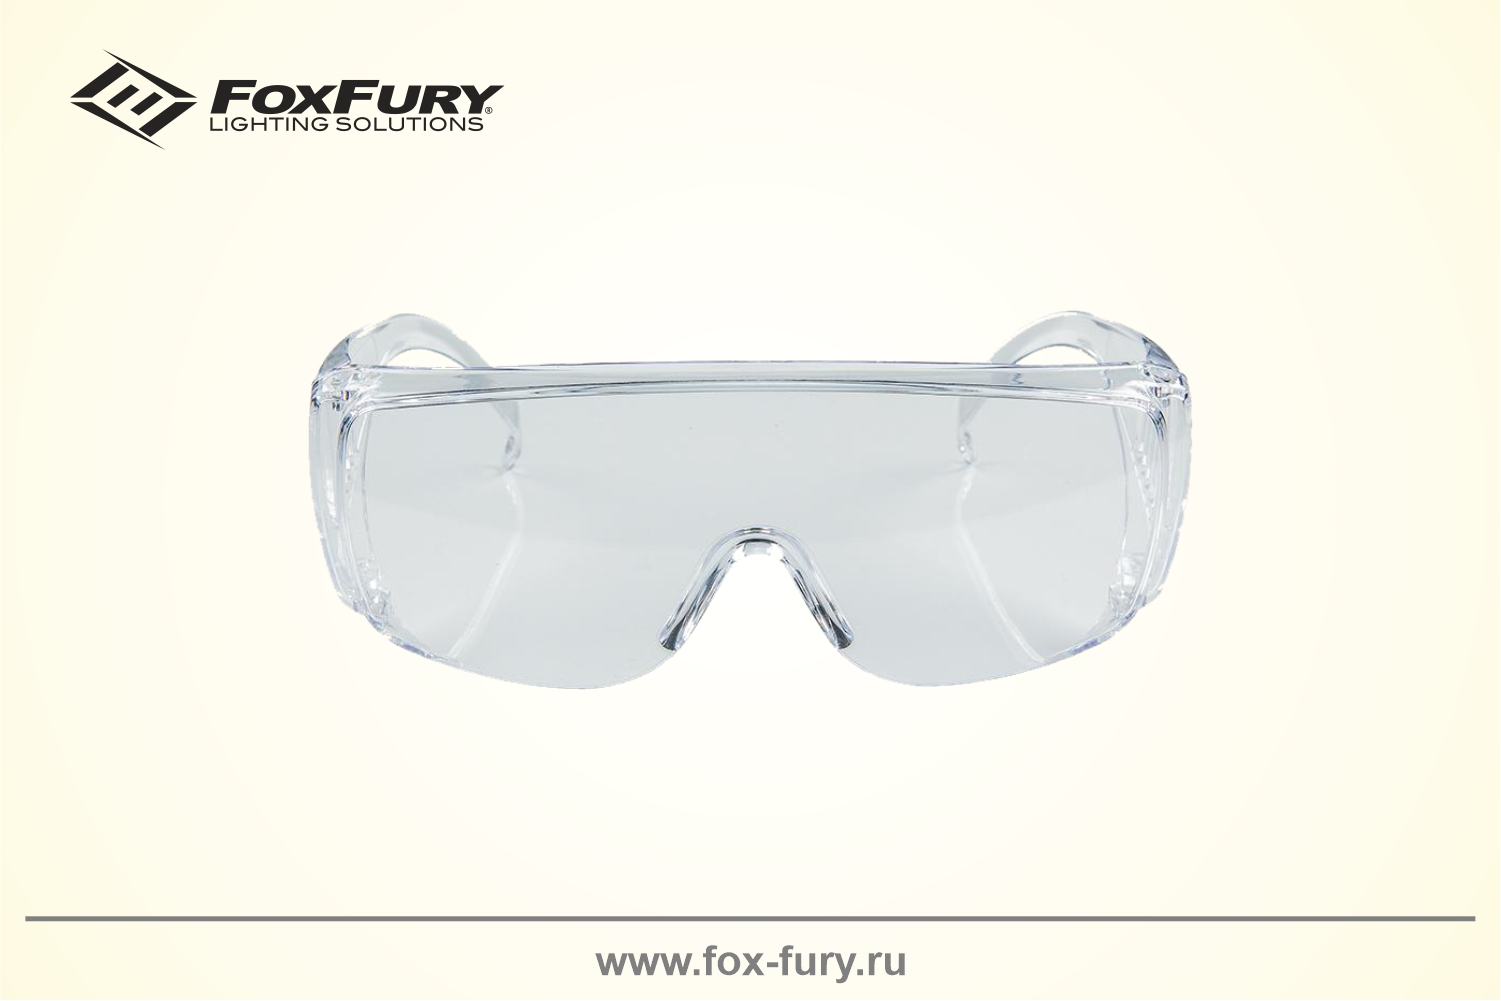 Очки для криминалистики FoxFury бесцветные 600-1030